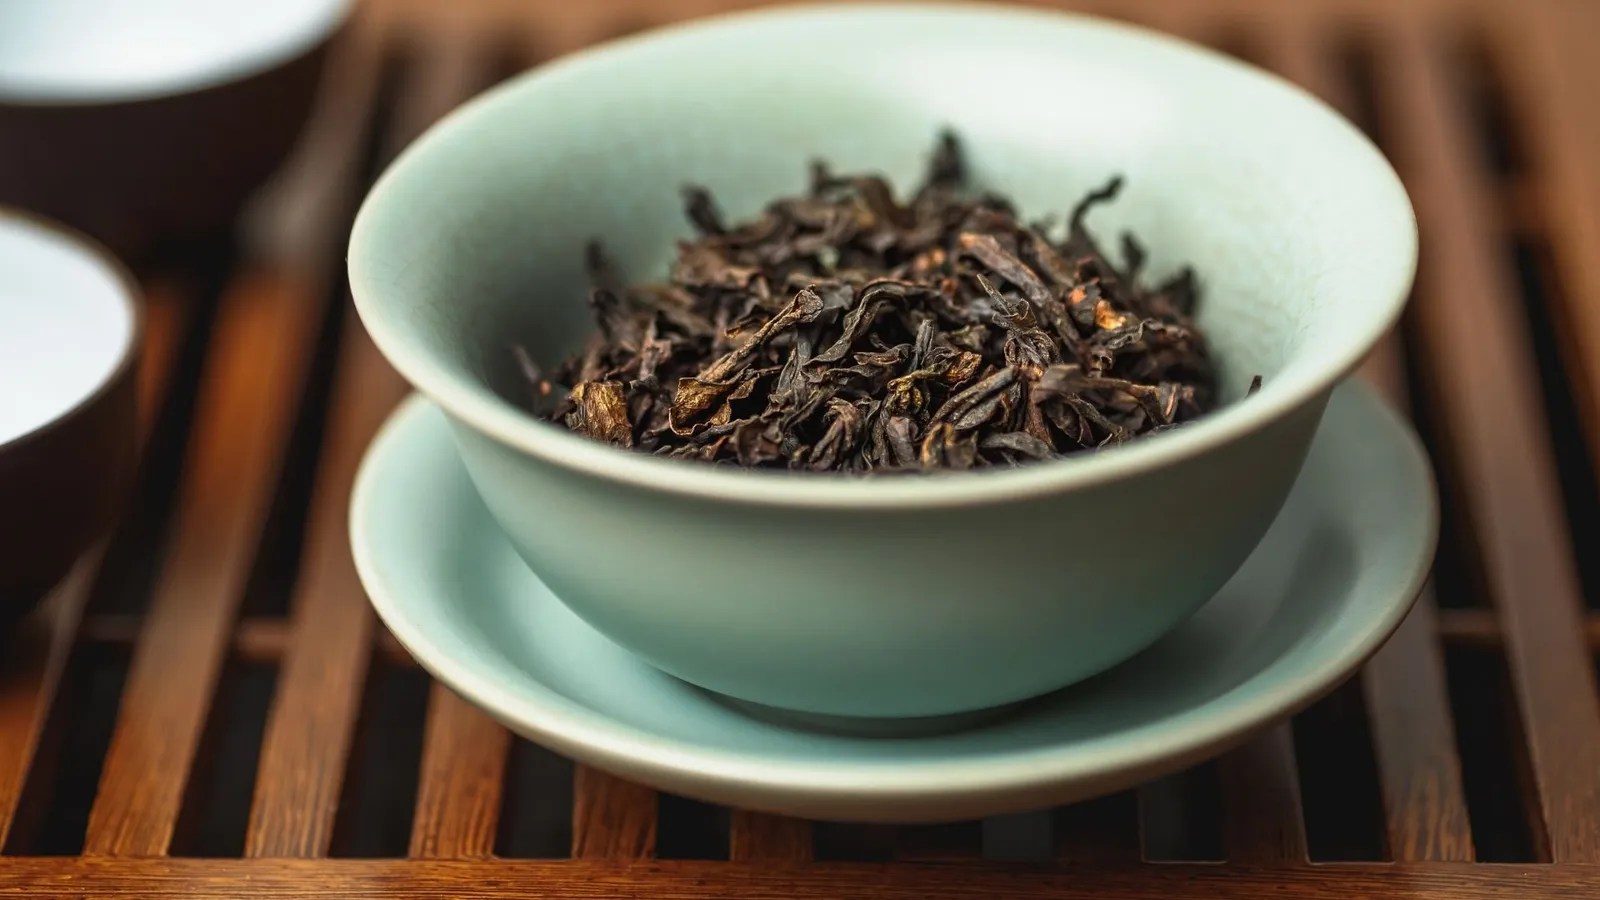  Da-Hong Pao Tea, China